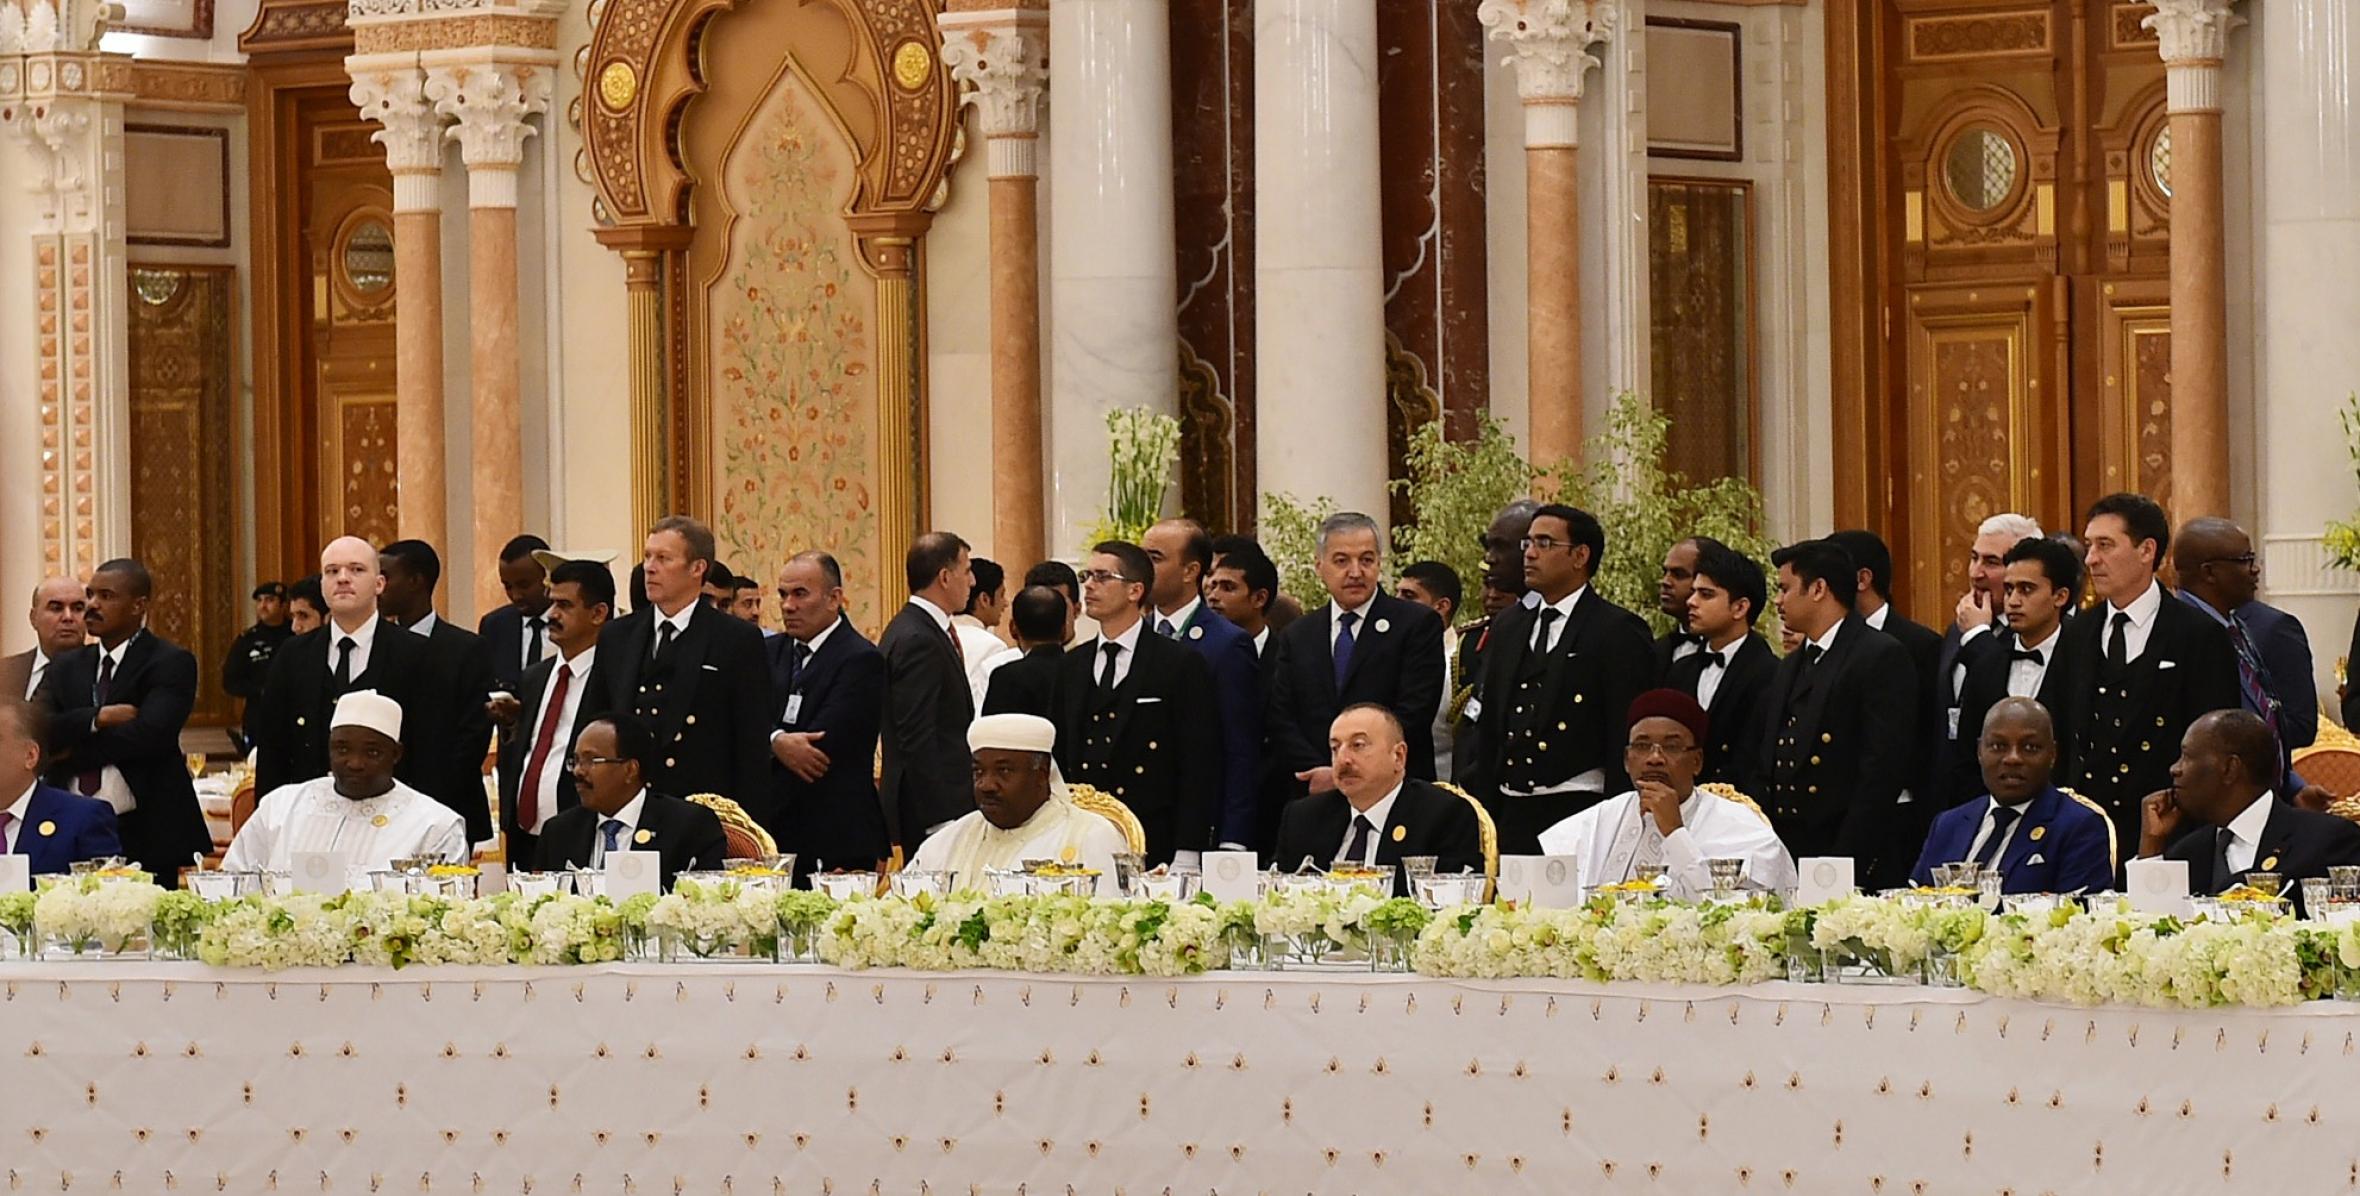 Ilham Aliyev attended  the Arab-Islamic-American summit in Riyadh